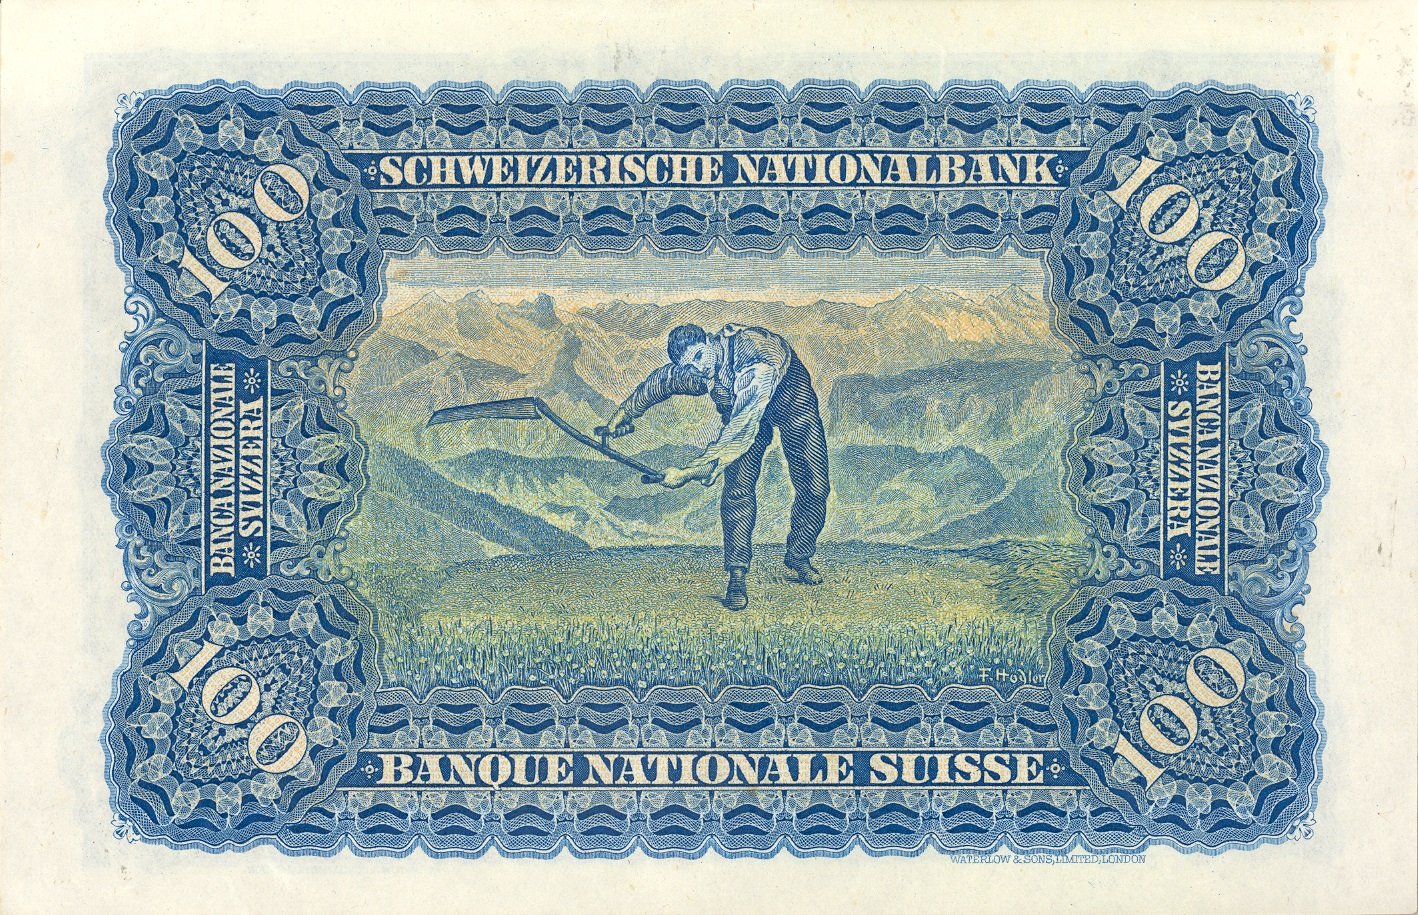 2ème série de billets 1911, Billet de 100 francs, verso